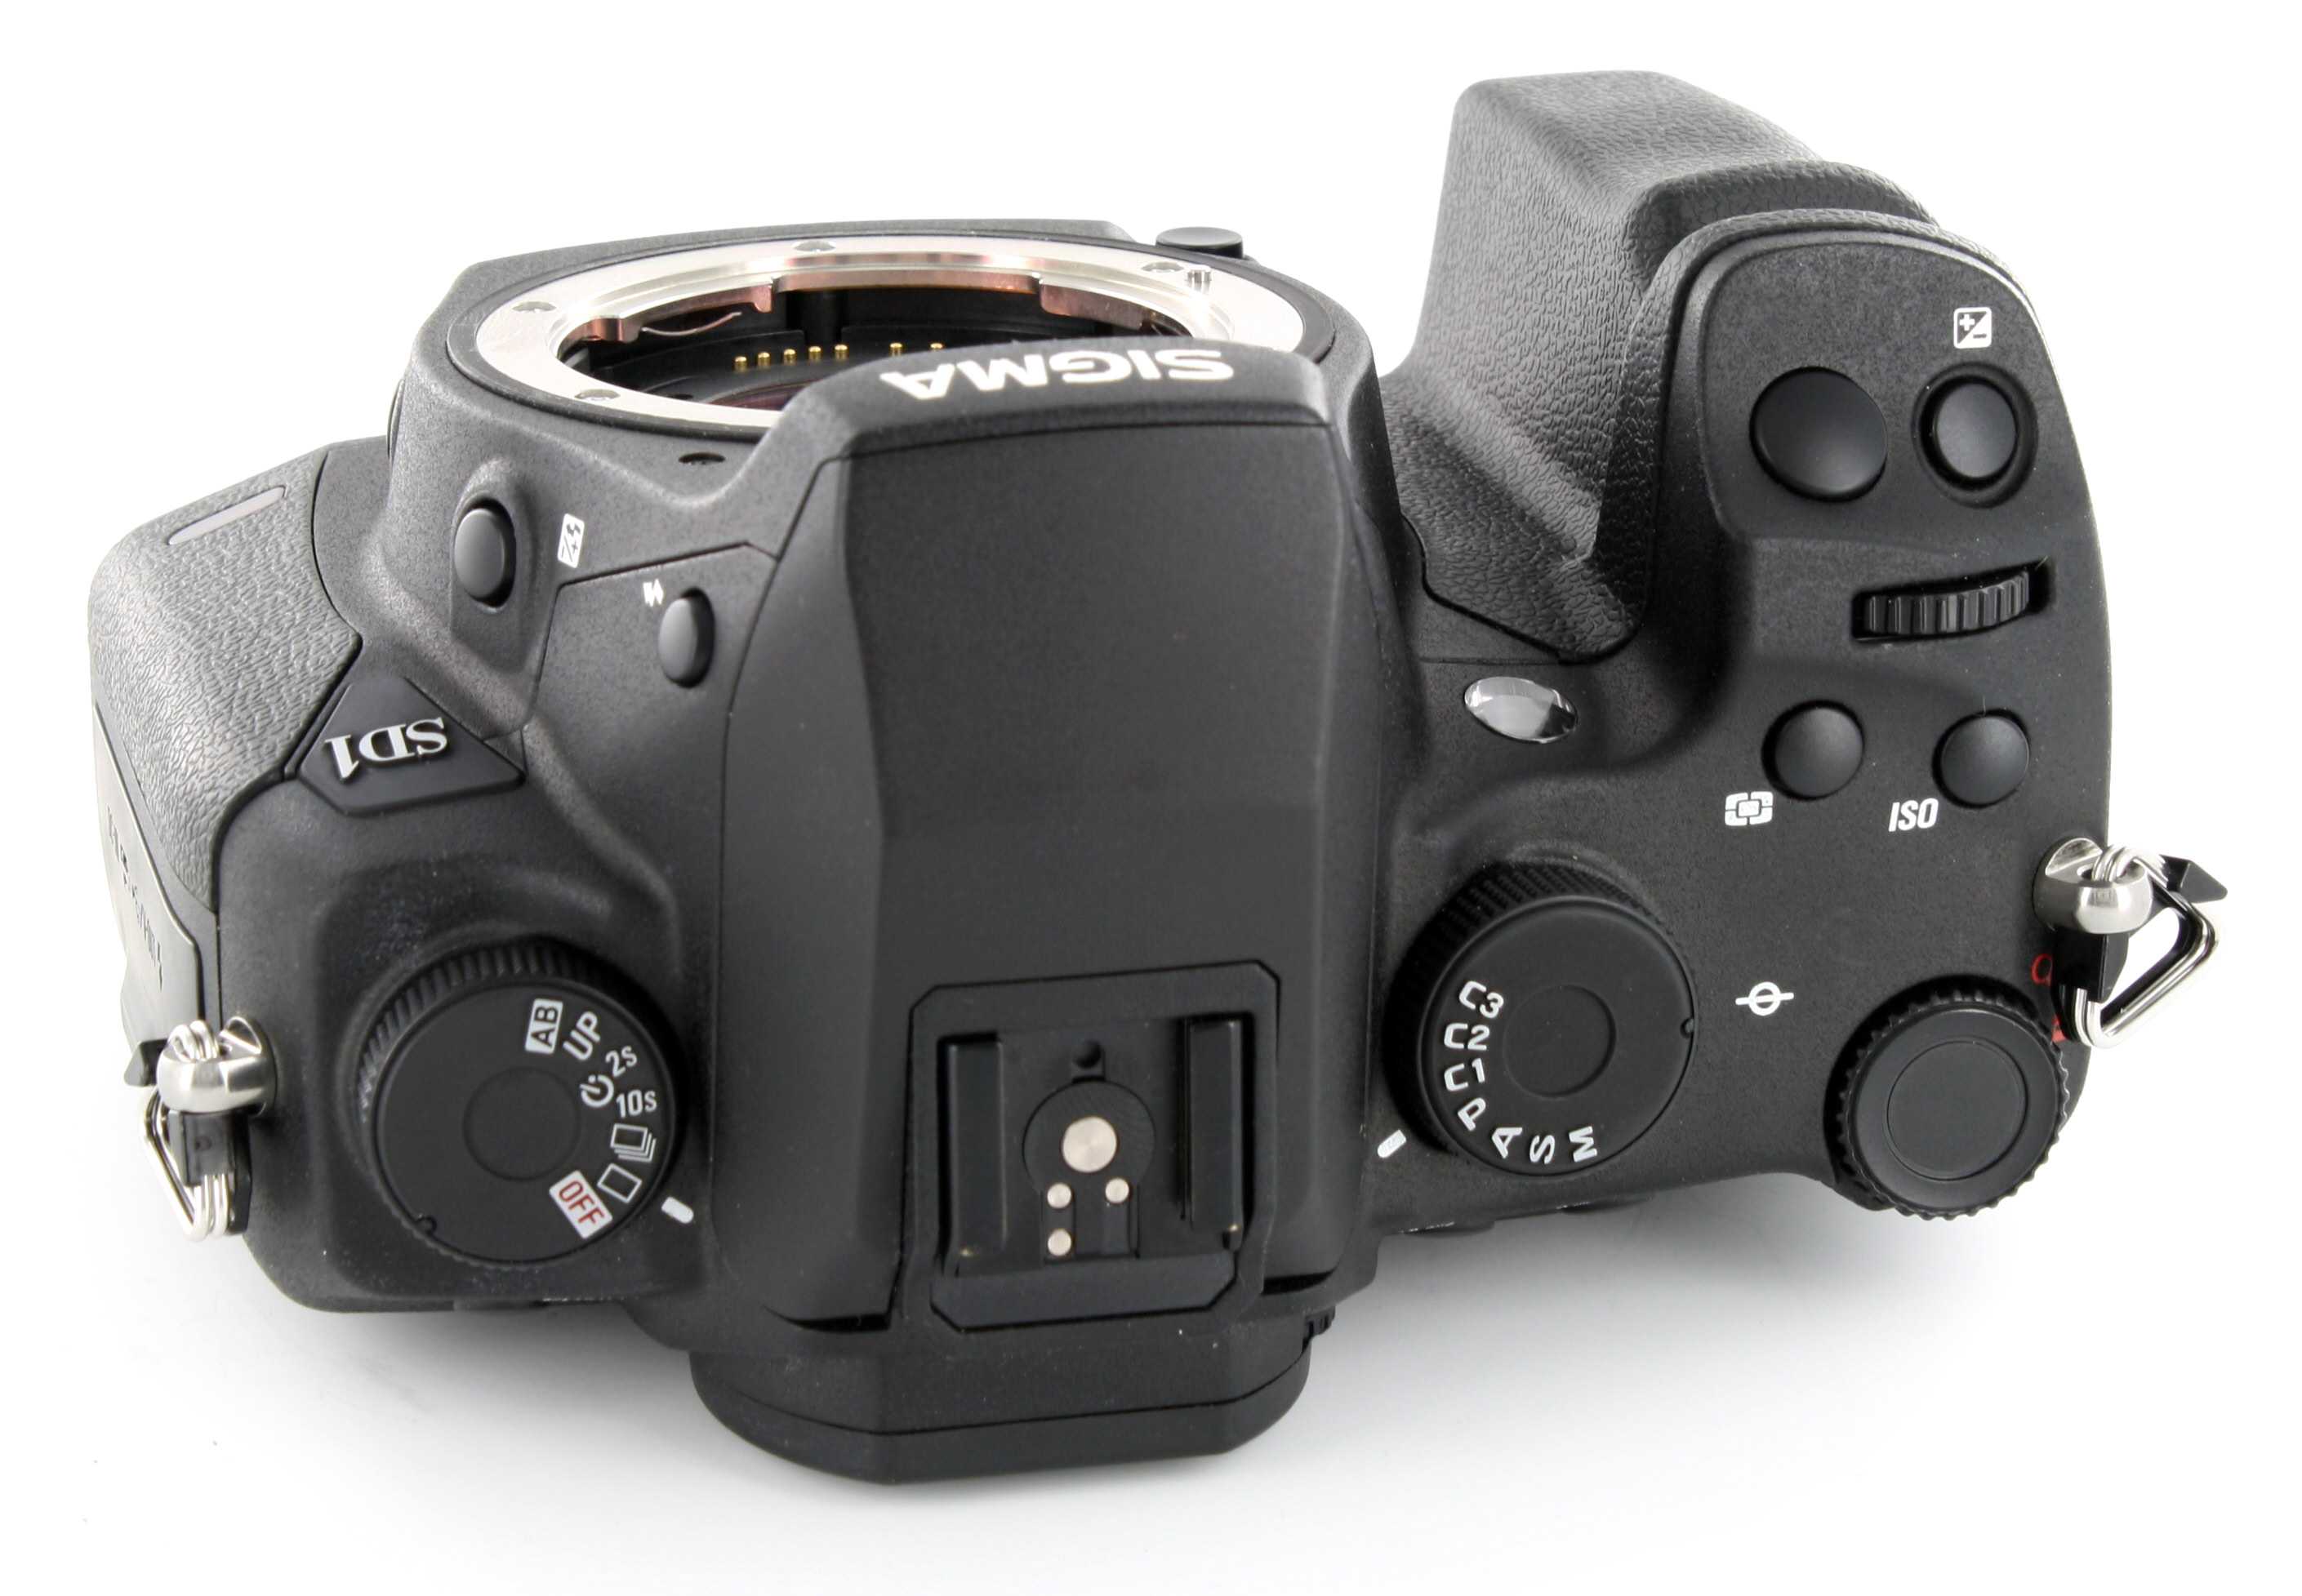 Фотоаппарат sigma sd1 merrill body в спб: купить недорого, распродажа, акции, 2021